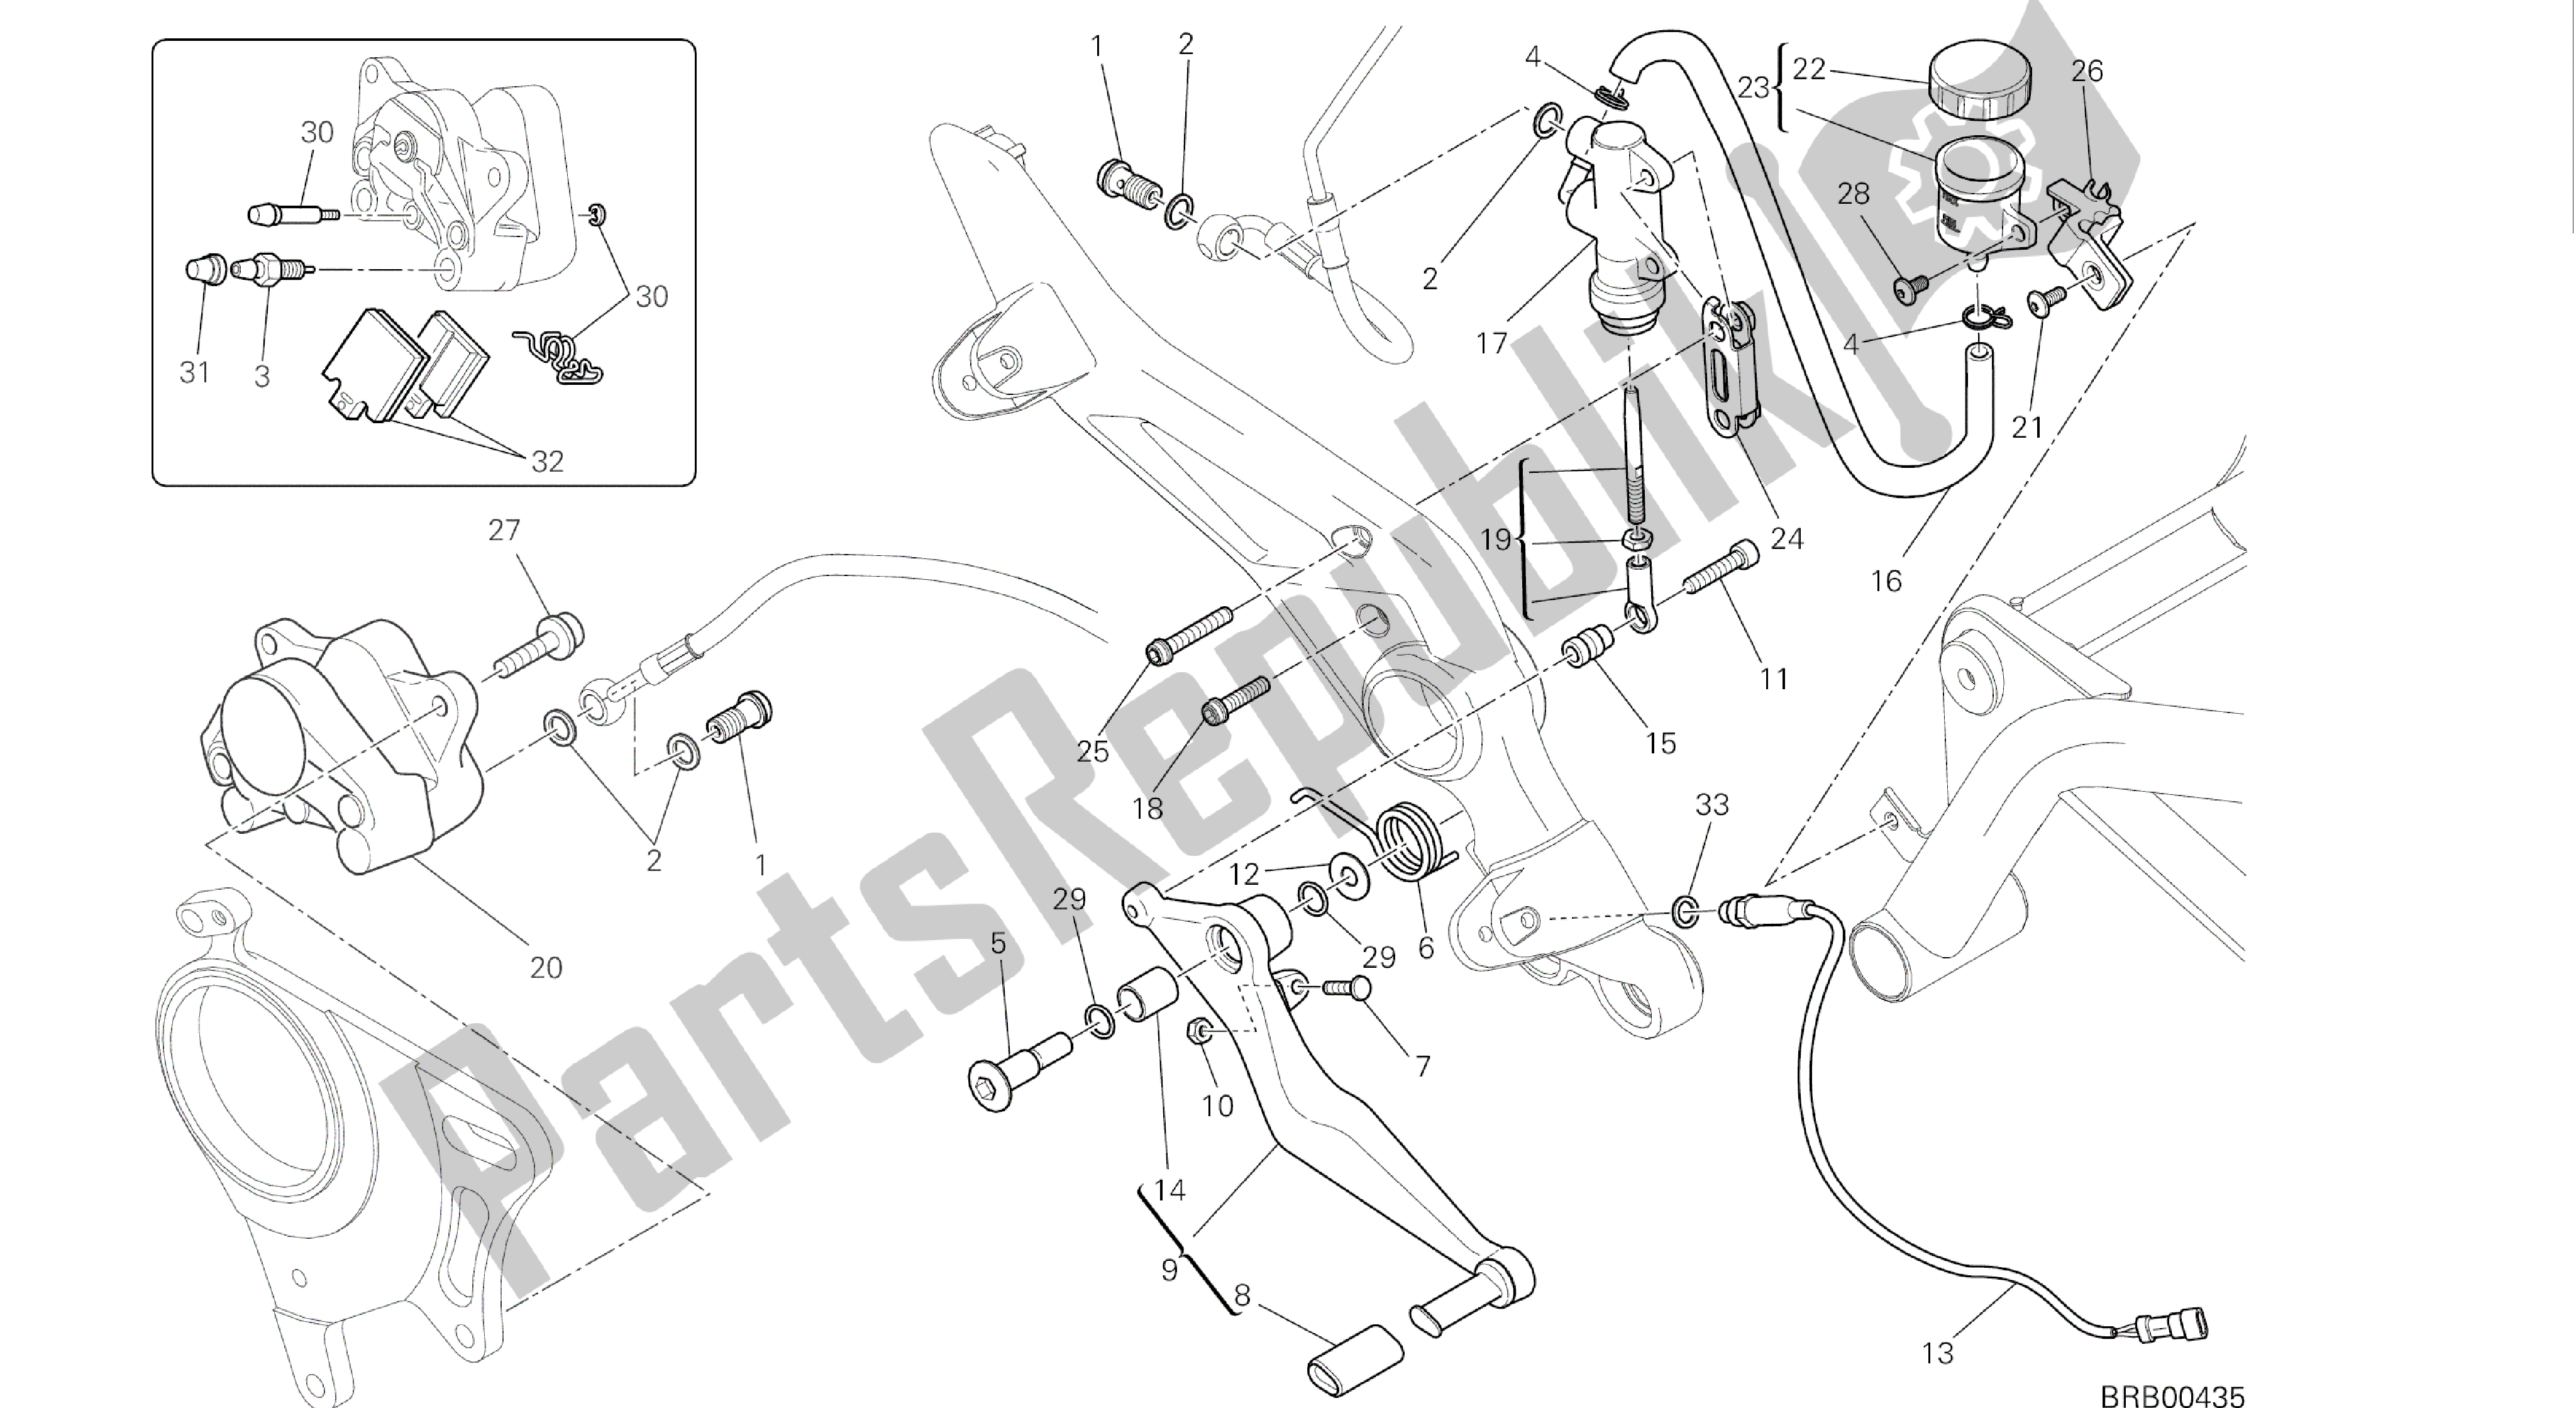 Todas las partes para Dibujo 025 - Sistema De Freno Trasero [mod: Hym-sp; Xst: Marco De Grupo Aus, Eur, Fra, Jap, Twn] de Ducati Hypermotard SP 821 2014